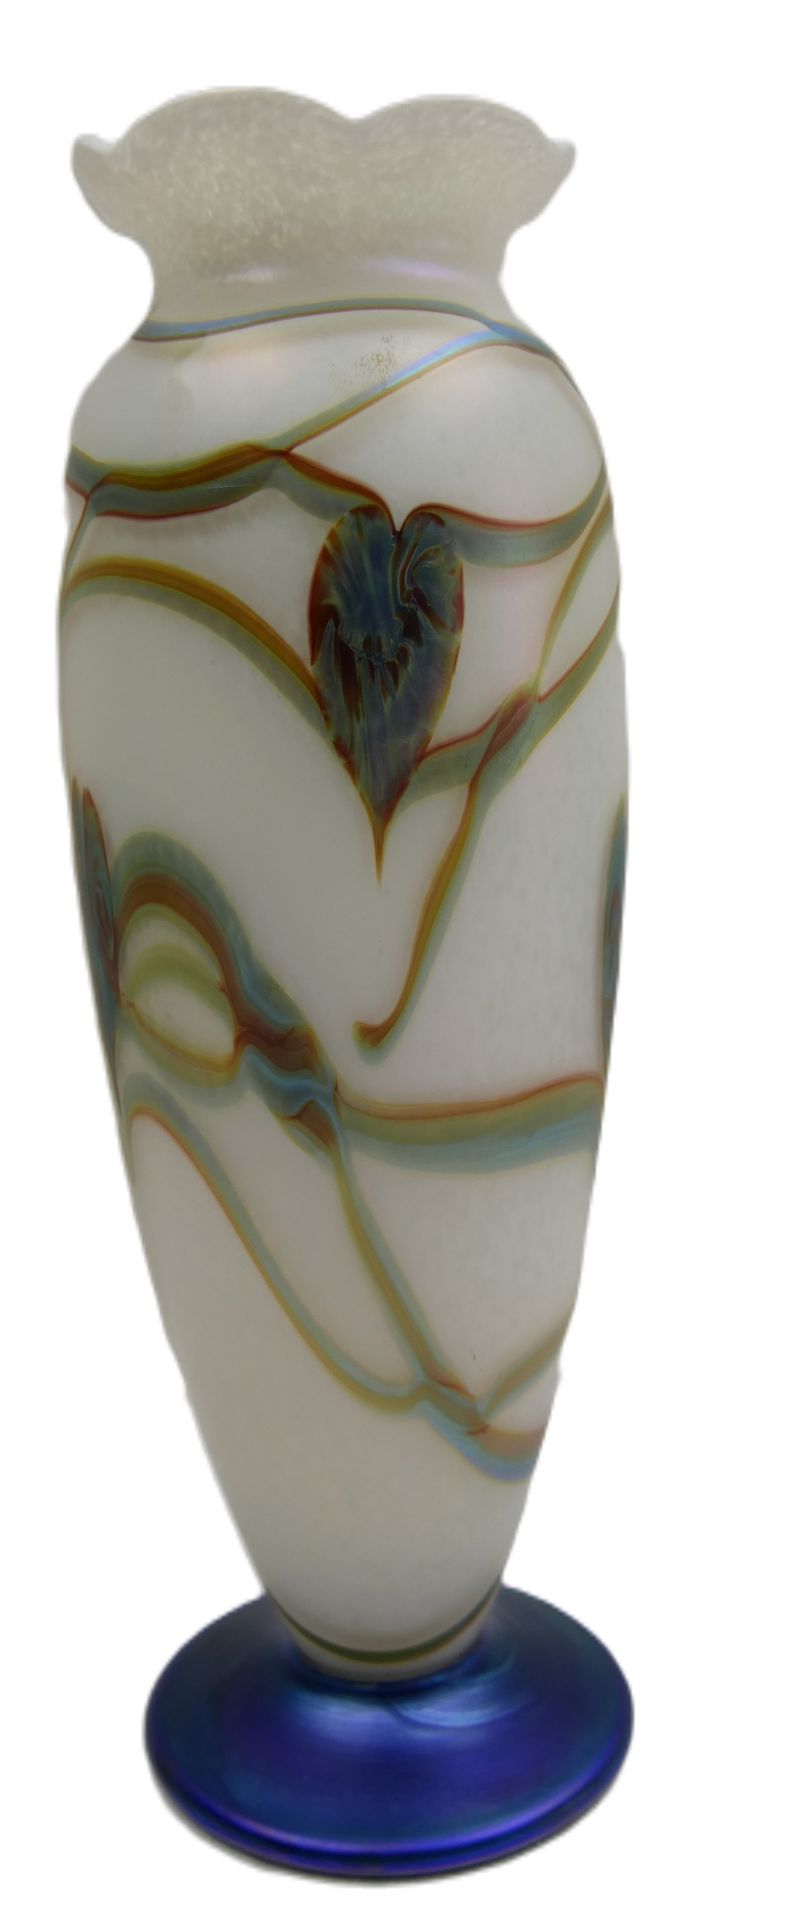 Schwere Glasvase, gemarkt R.P. Golding, mit floralem Design. Höhe ca. 26,4 cm